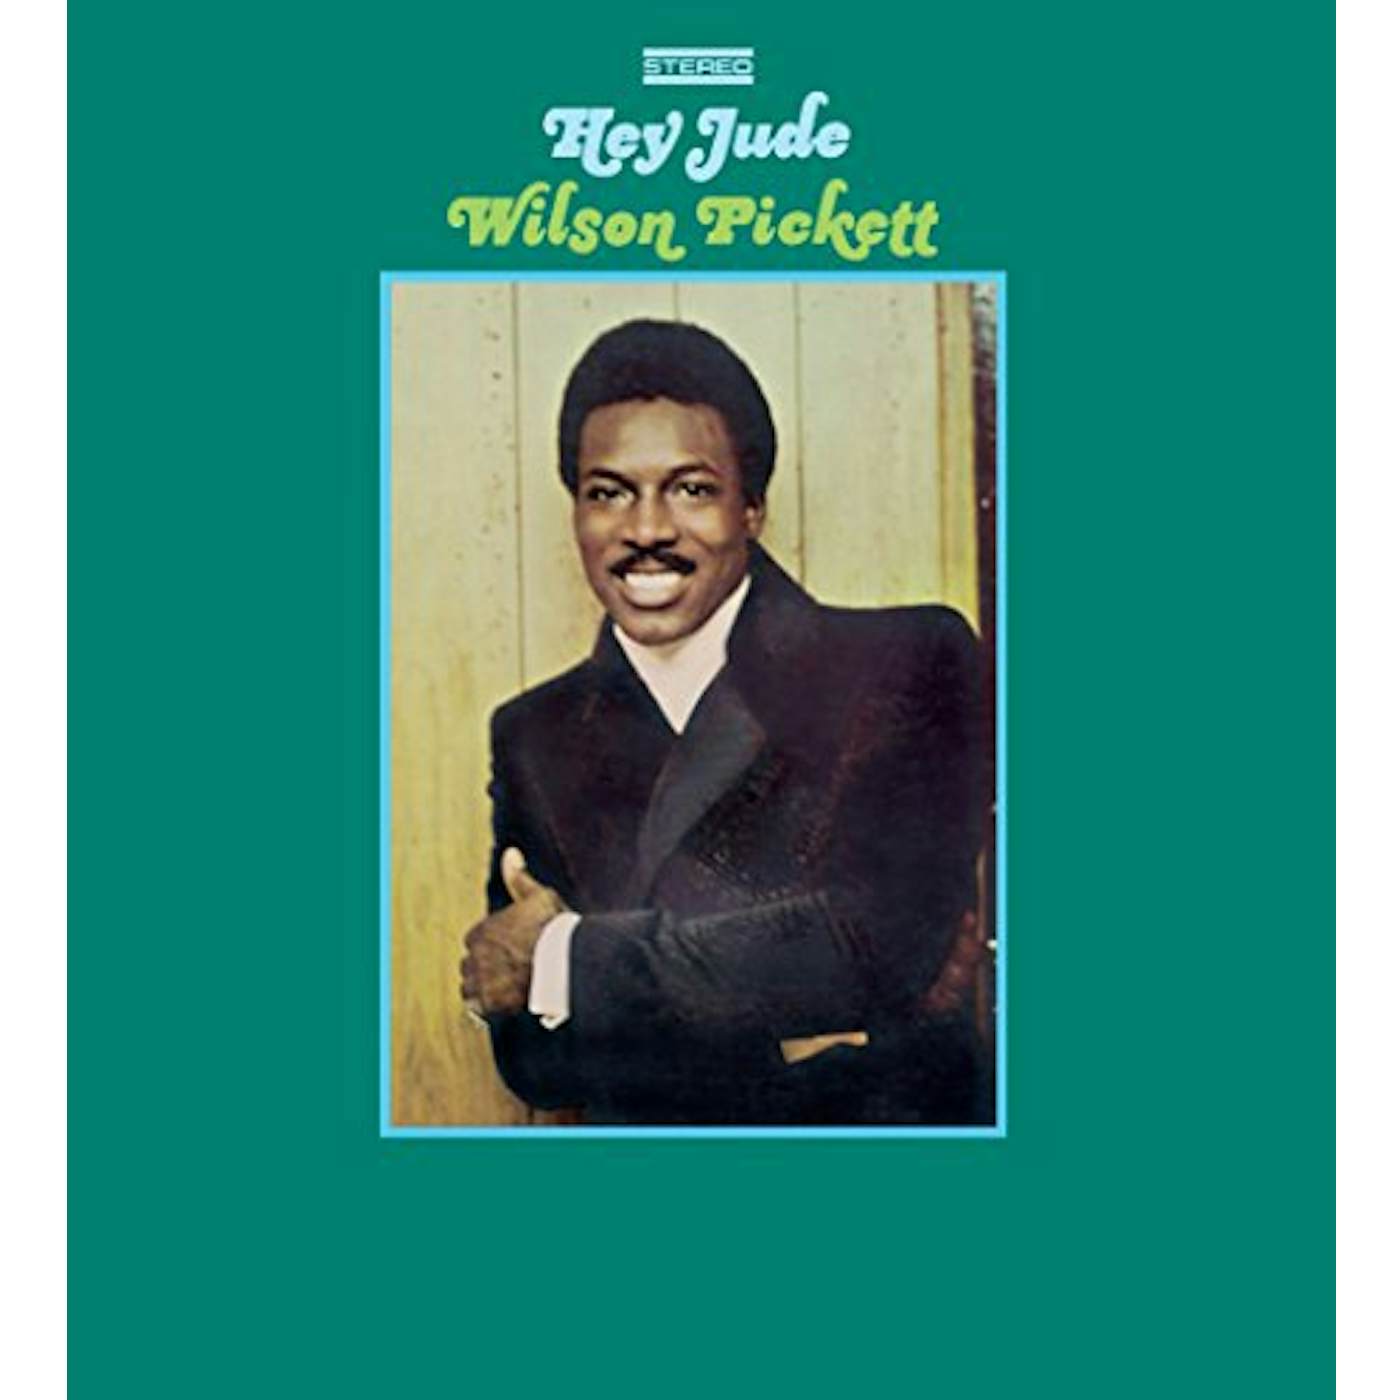 Wilson Pickett Hey Jude Vinyl Record